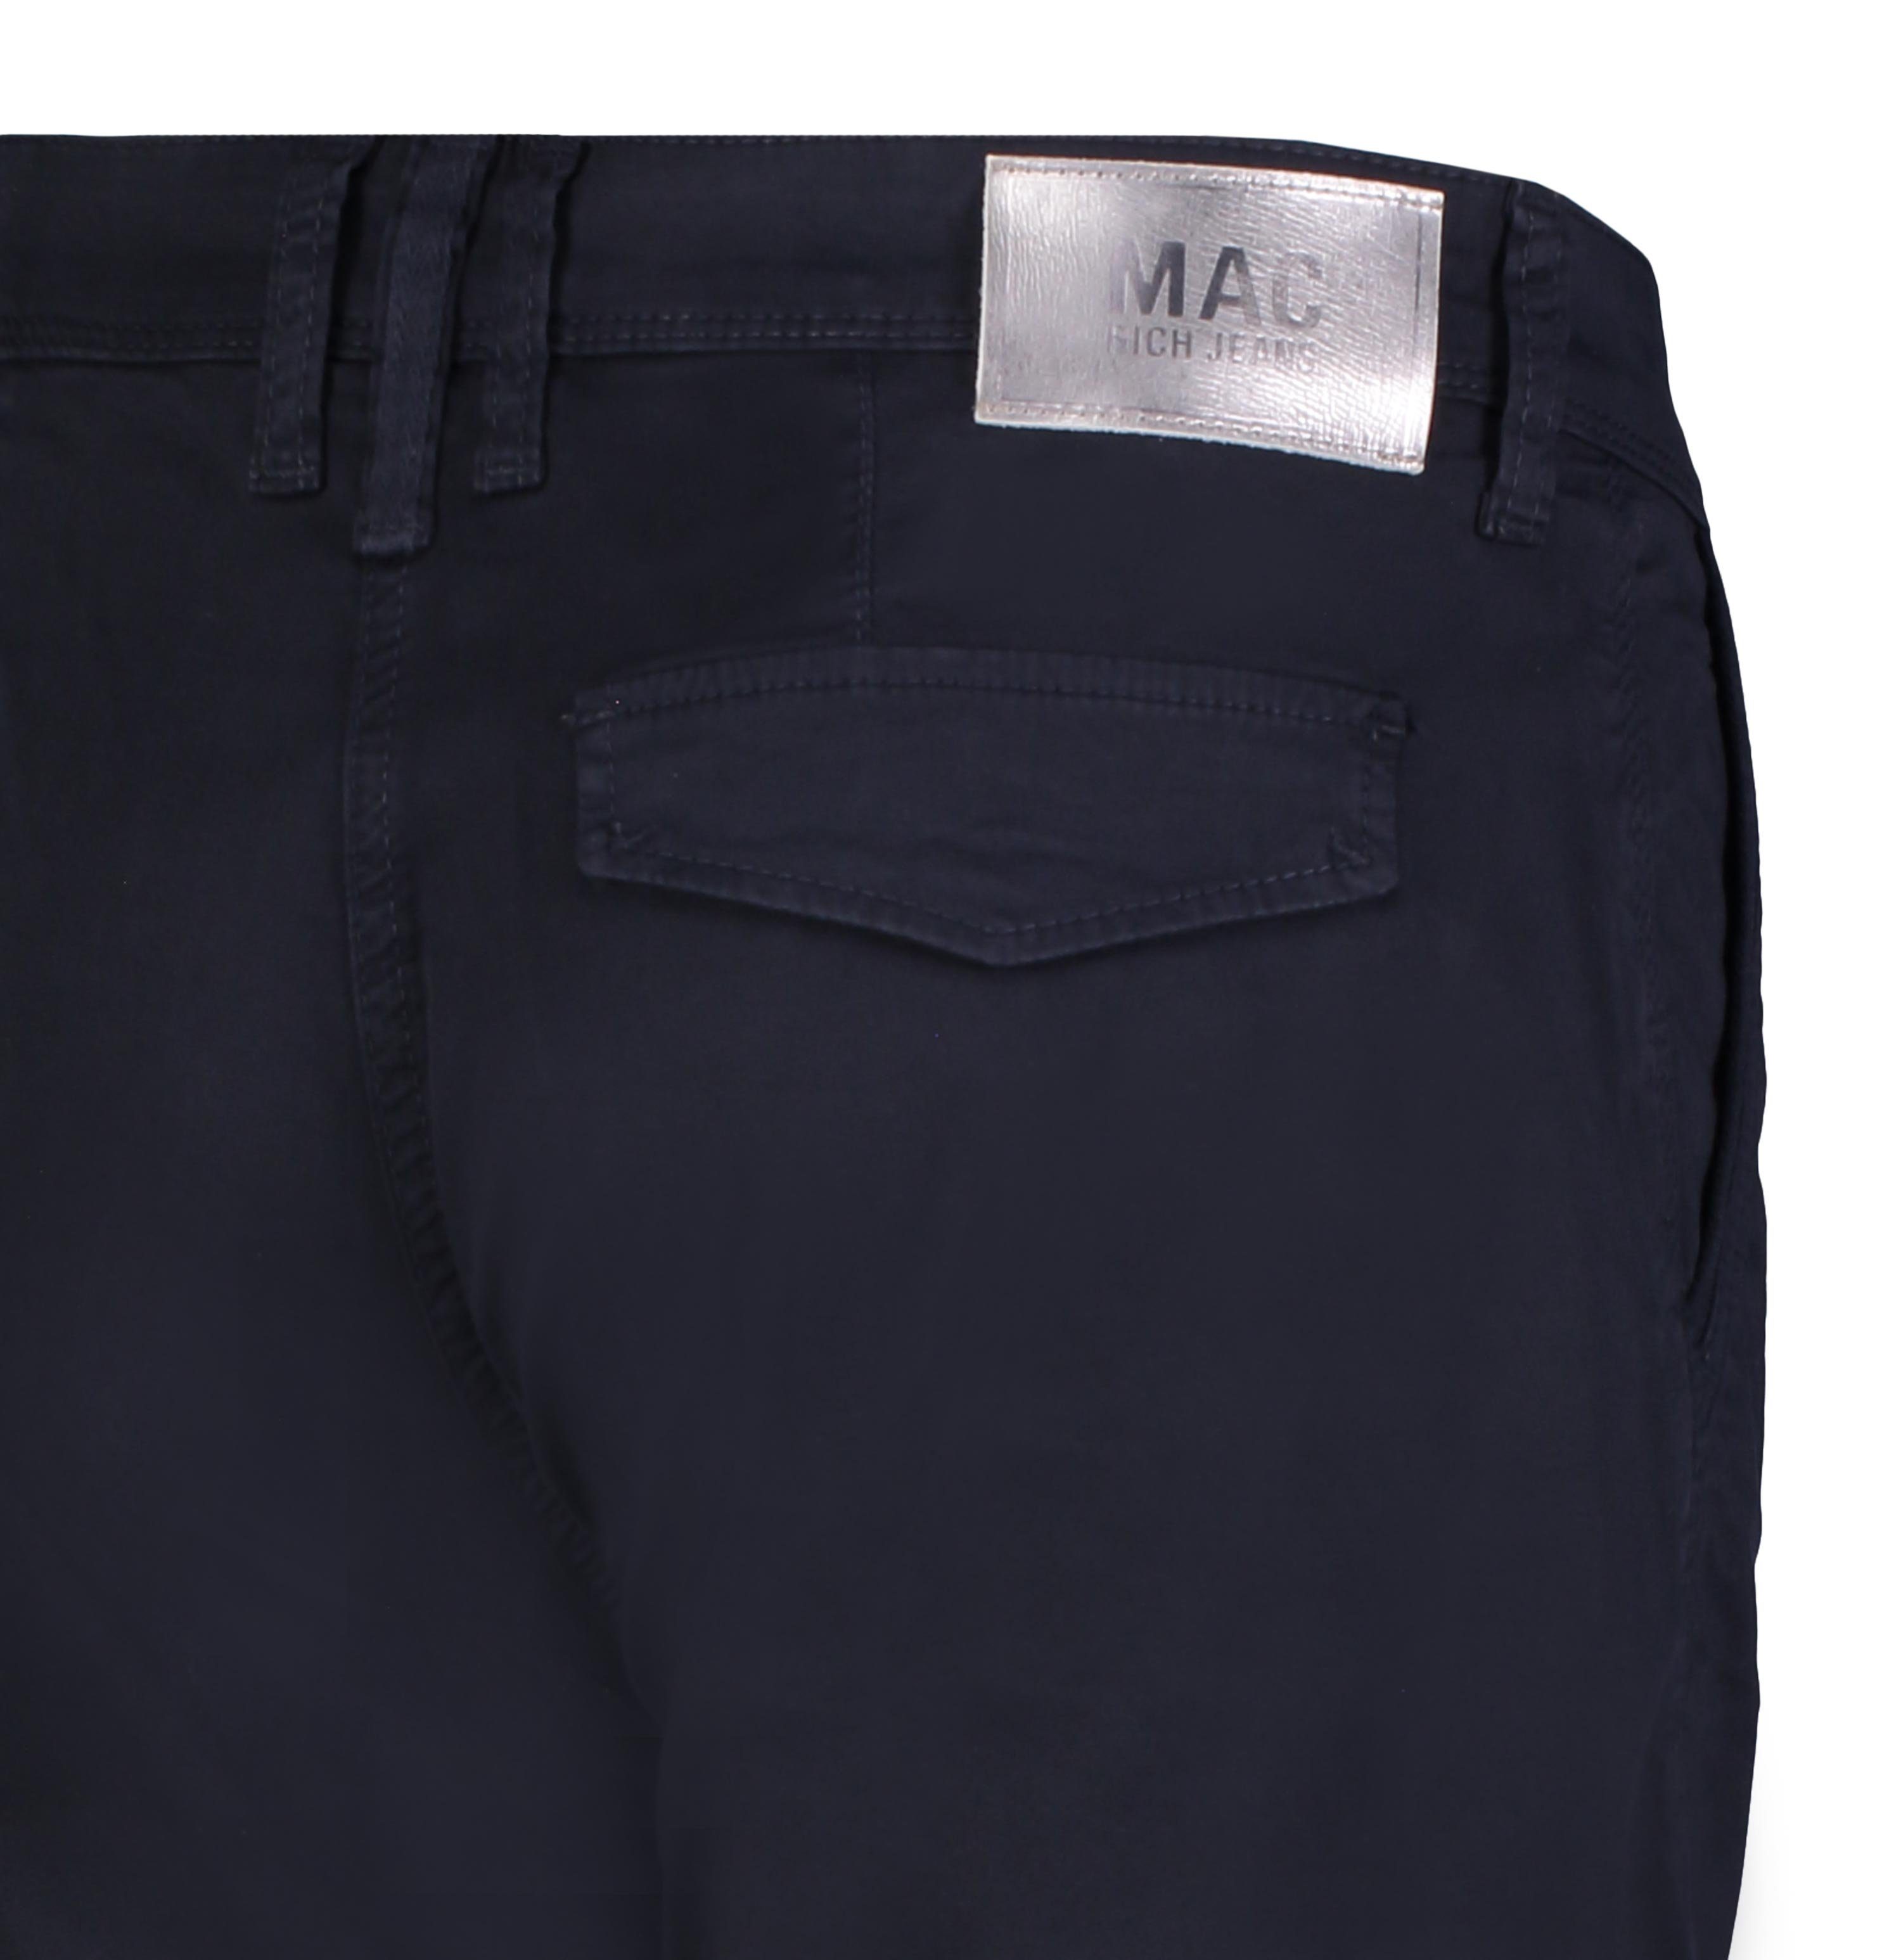 RICH PPT 198R Stretch-Jeans blue MAC CARGO 2380-01-0430 SHORTY dark MAC